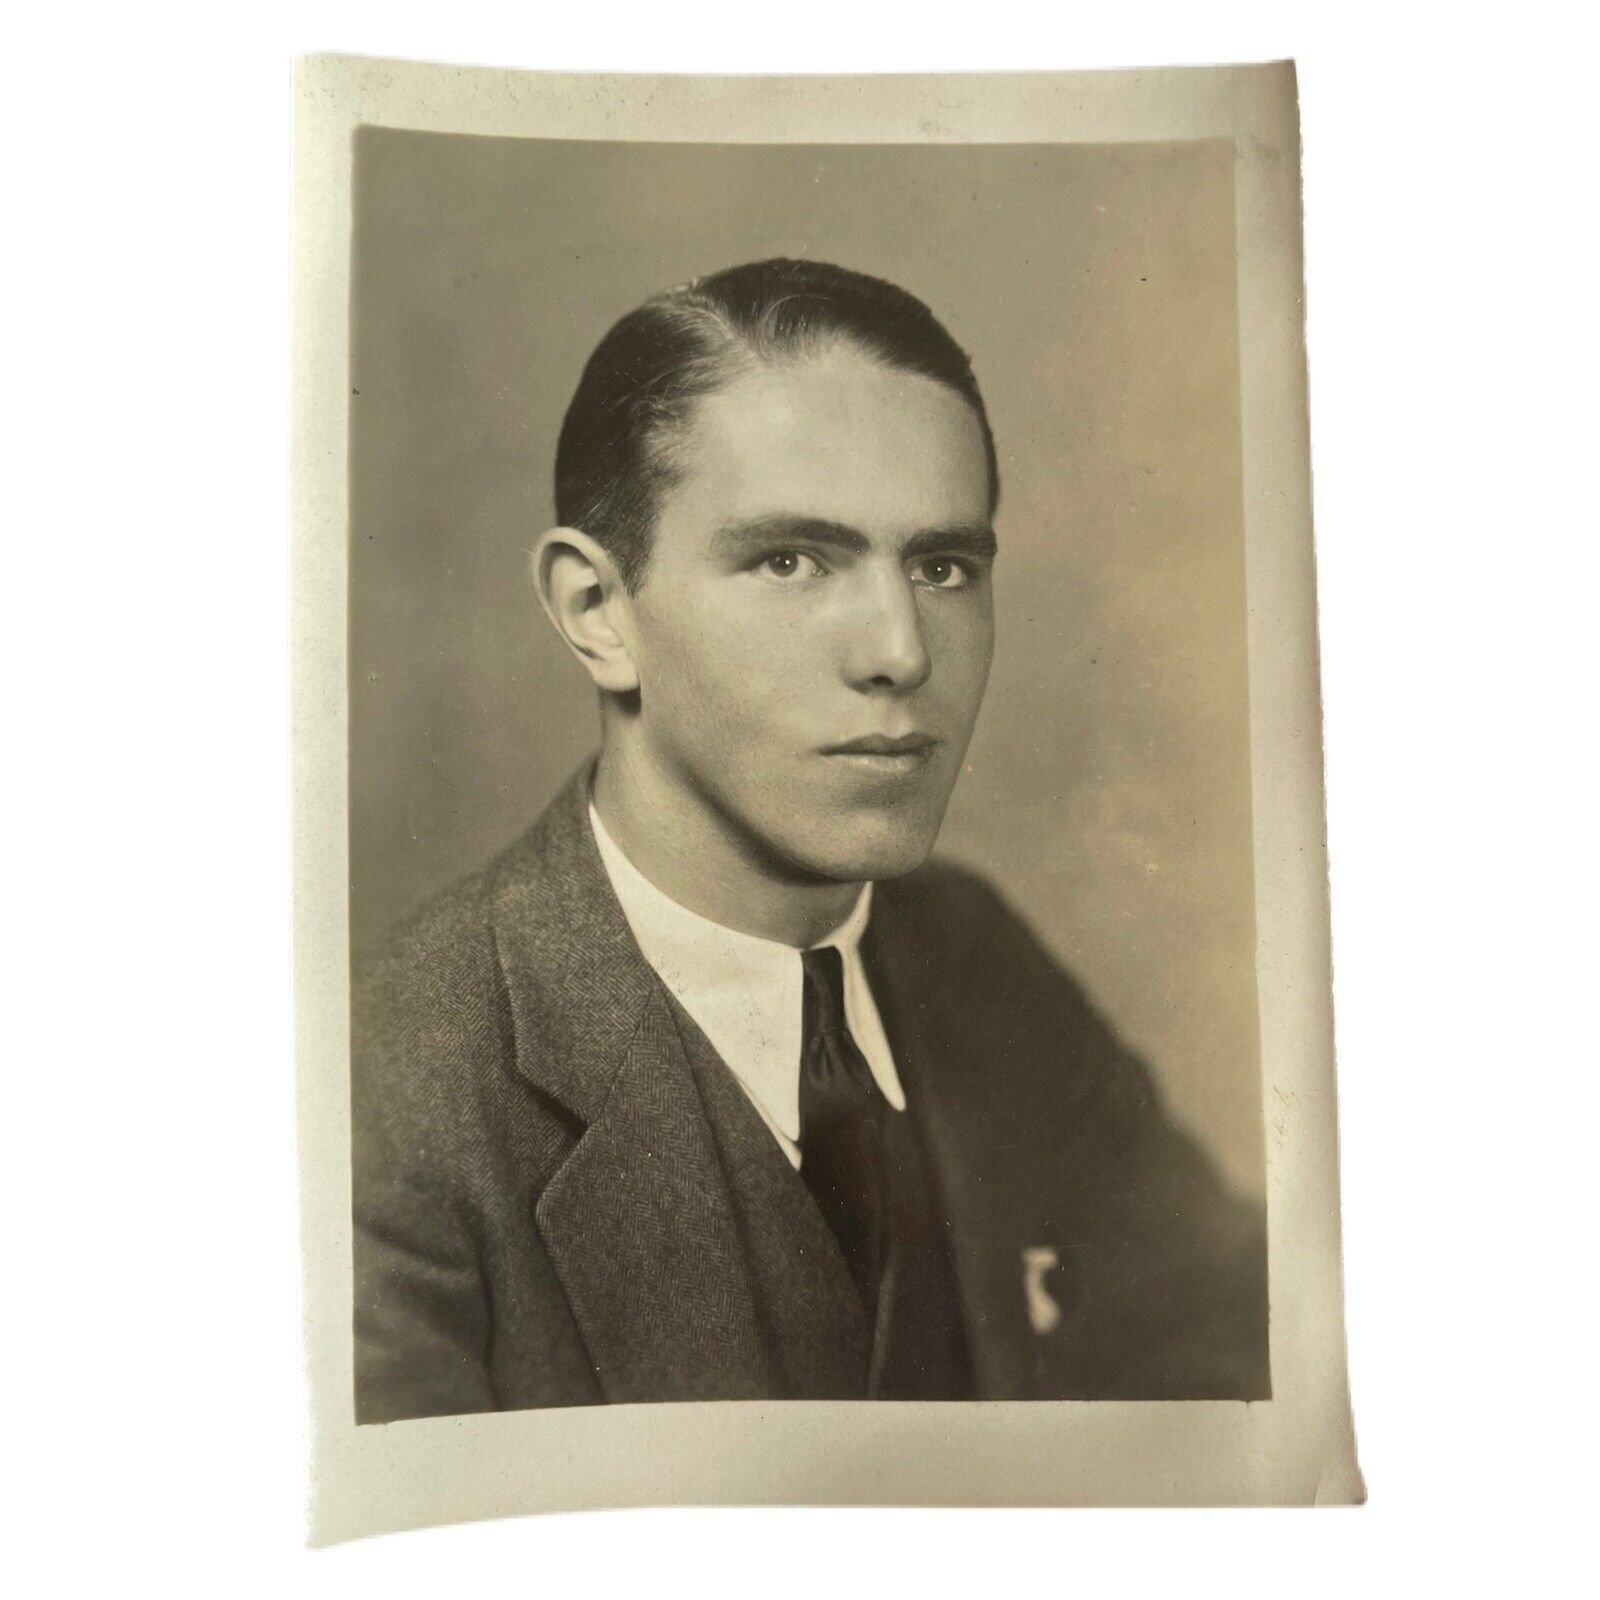 Male Photo Portrait Gilman School Cynosure Yearbook CDV Snapshot Vintage Found